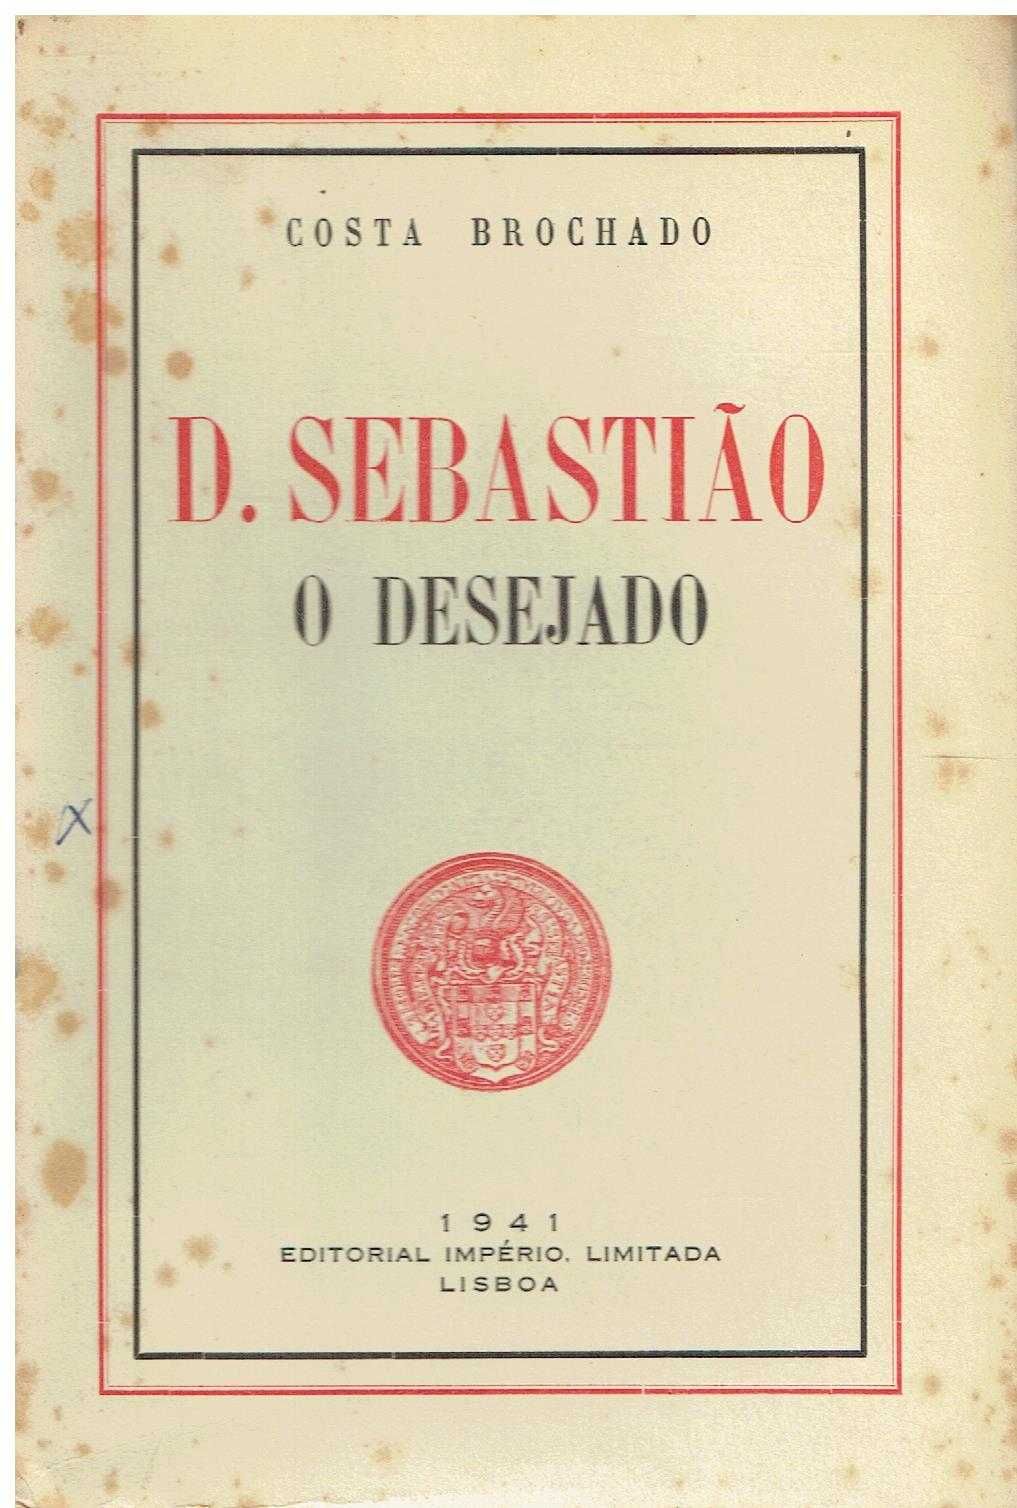 8519

D. Sebastião , o desejado  
de Costa Brochado.